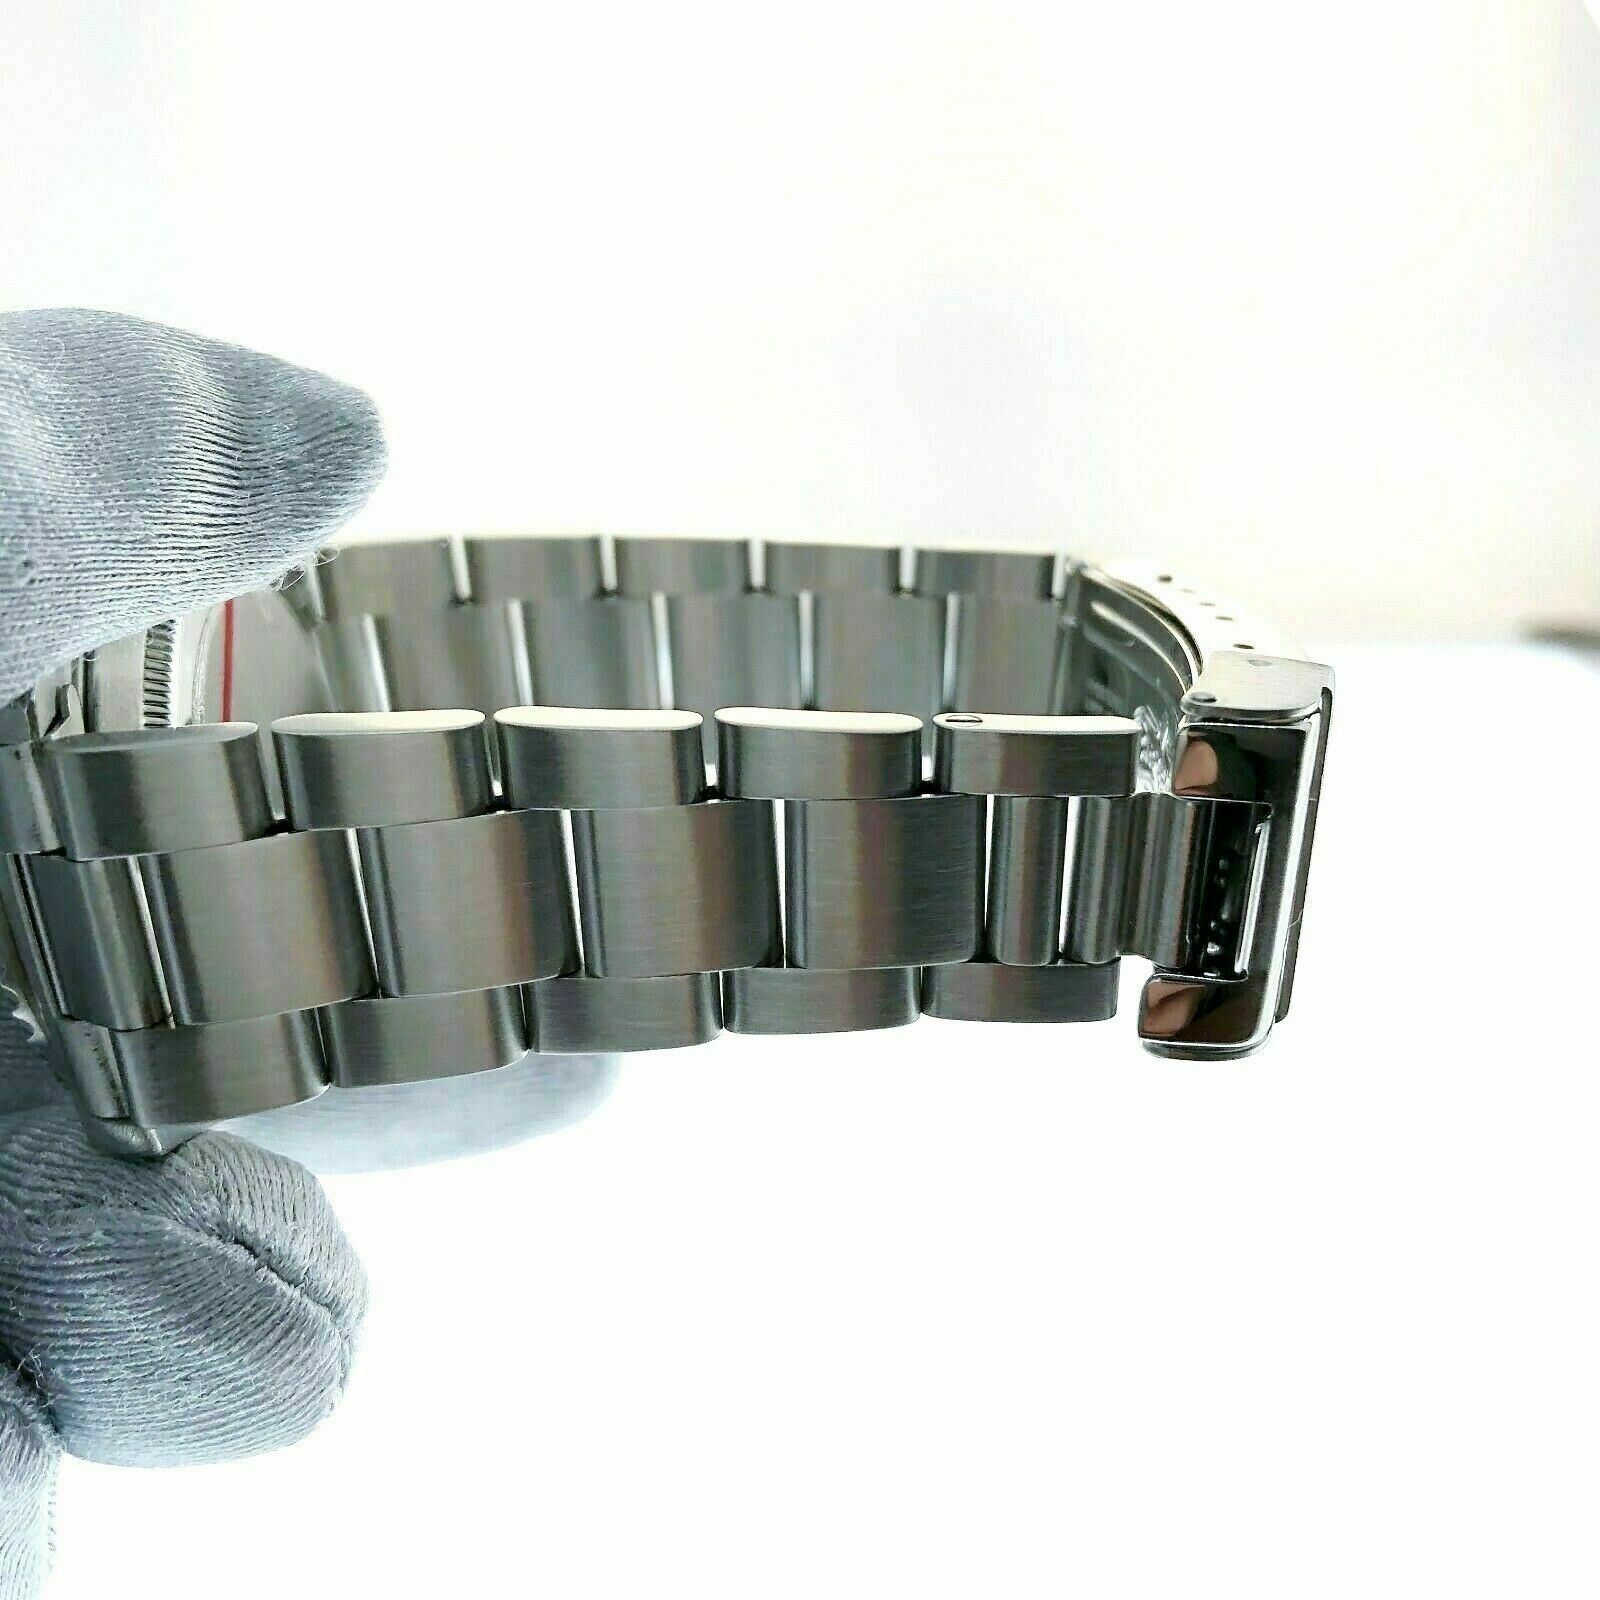 Rolex Black 4 Line No Date Submariner Stainless Steel Watch Ref 14060M K Serial